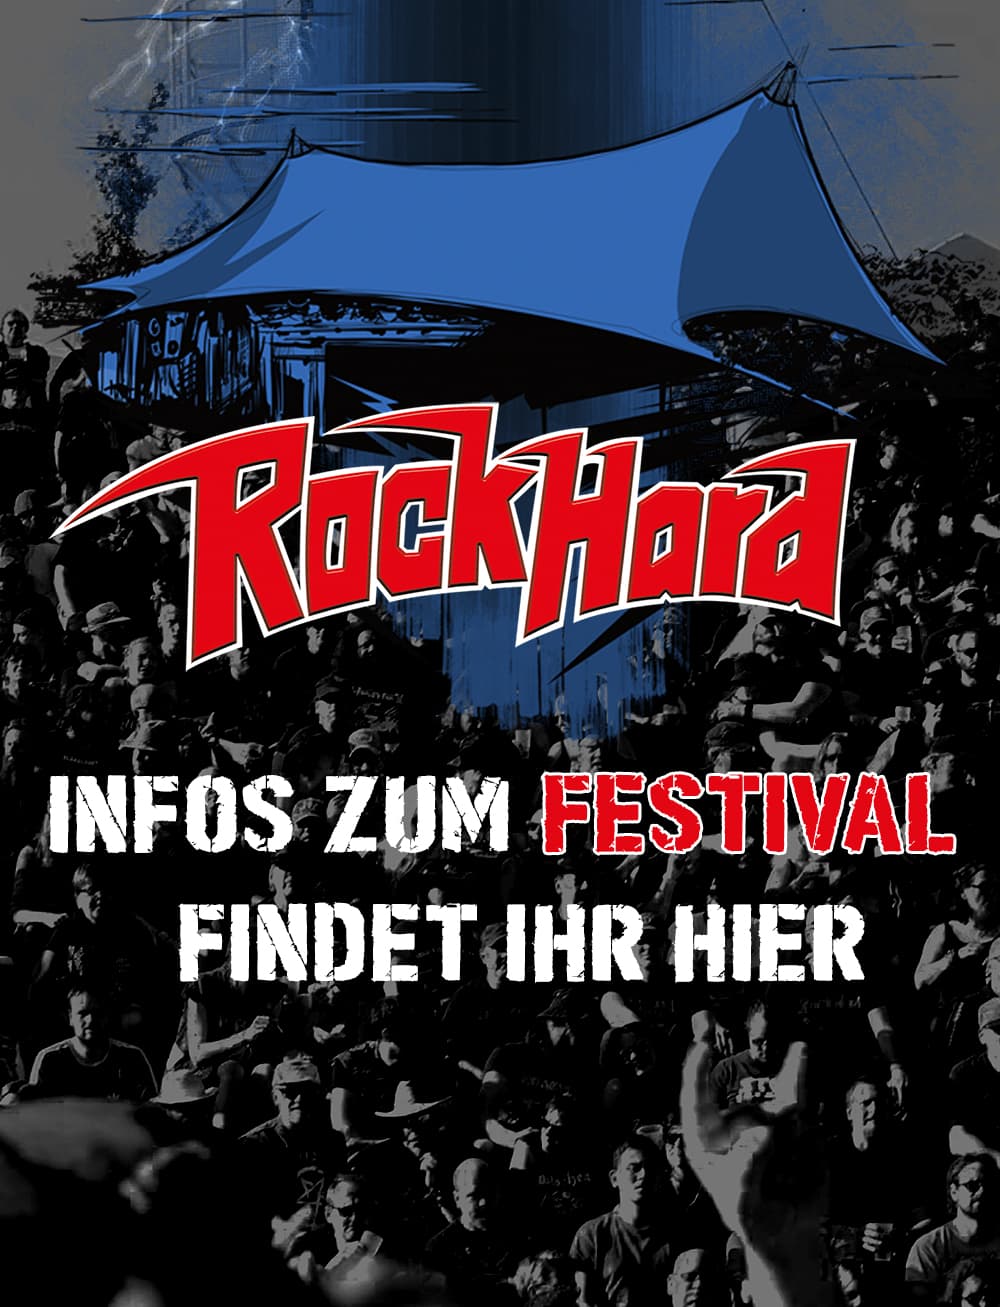 RockHard Festival